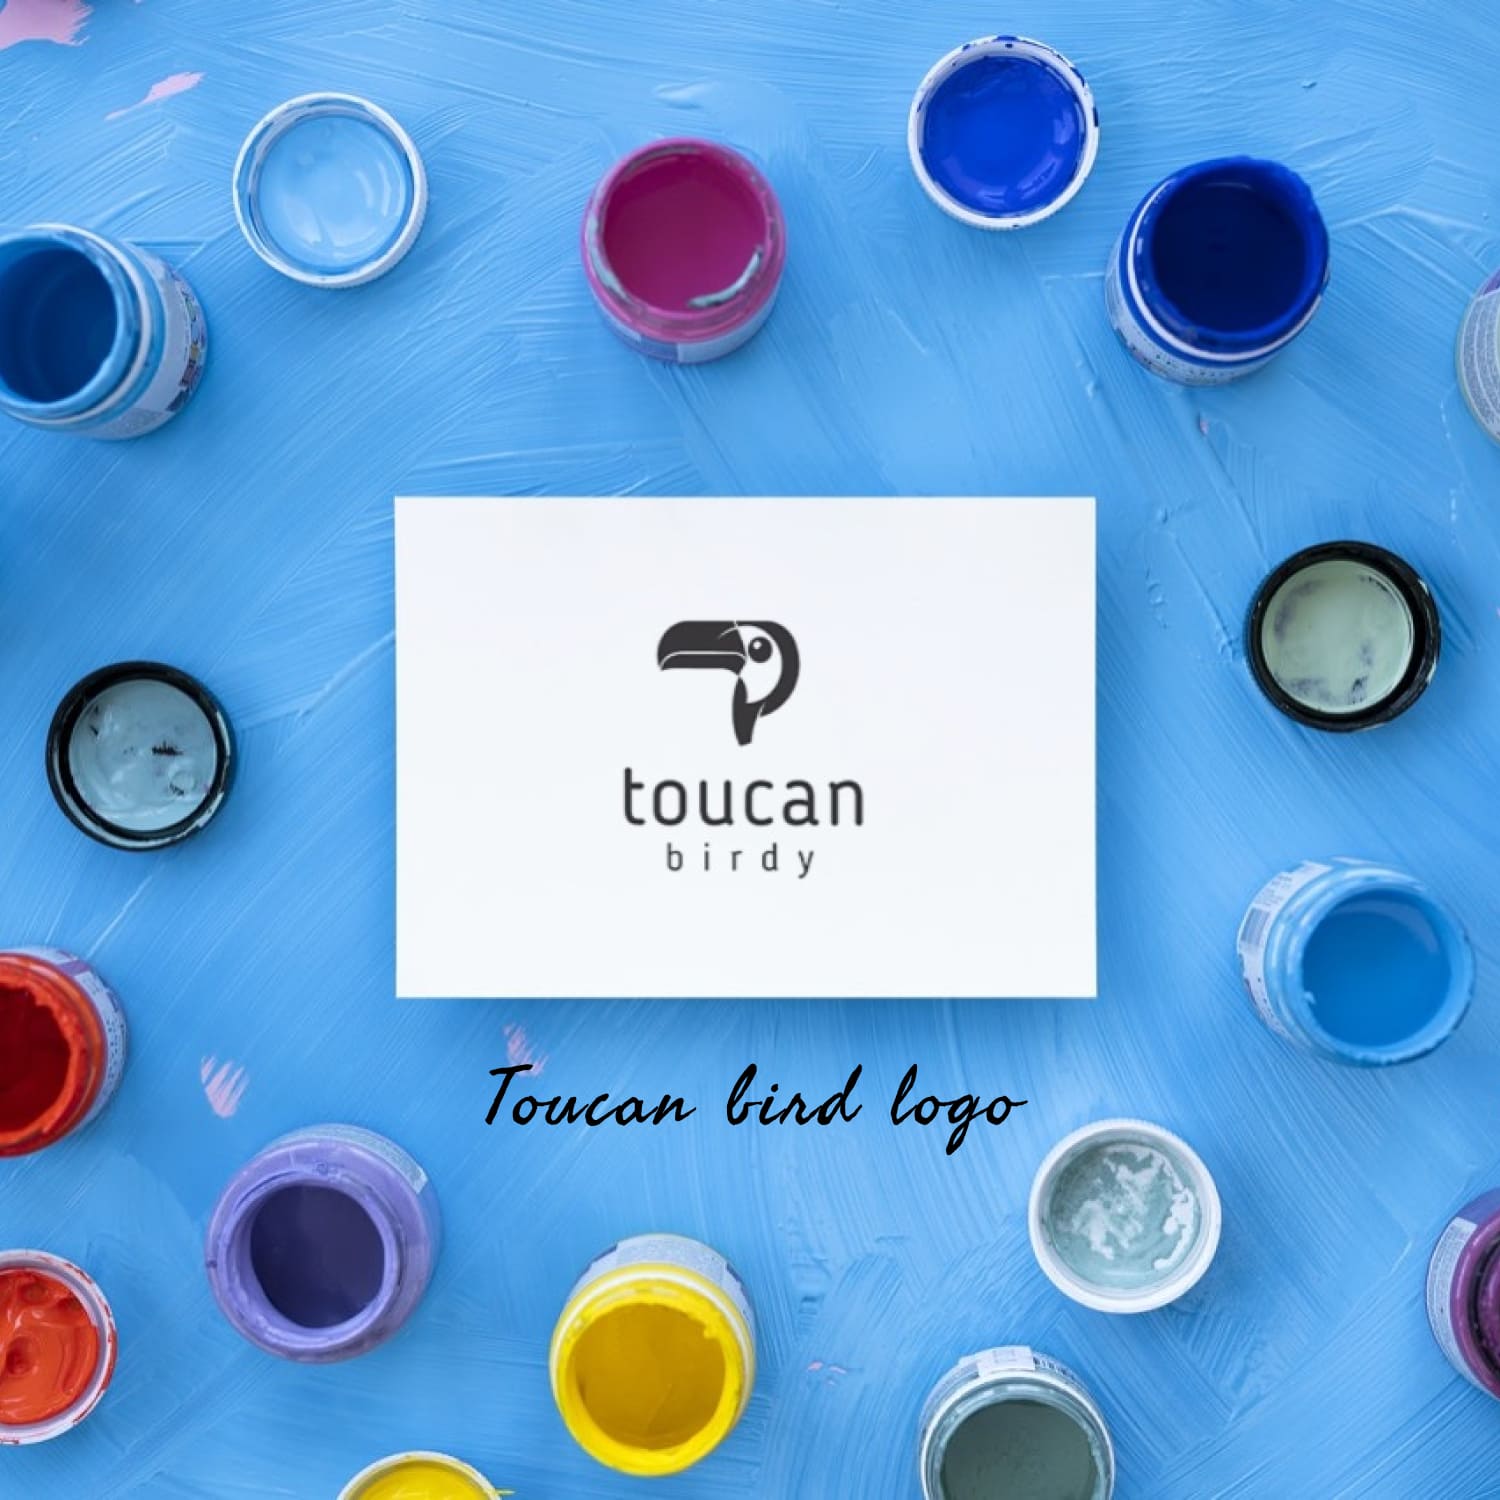 toucan bird logo template.